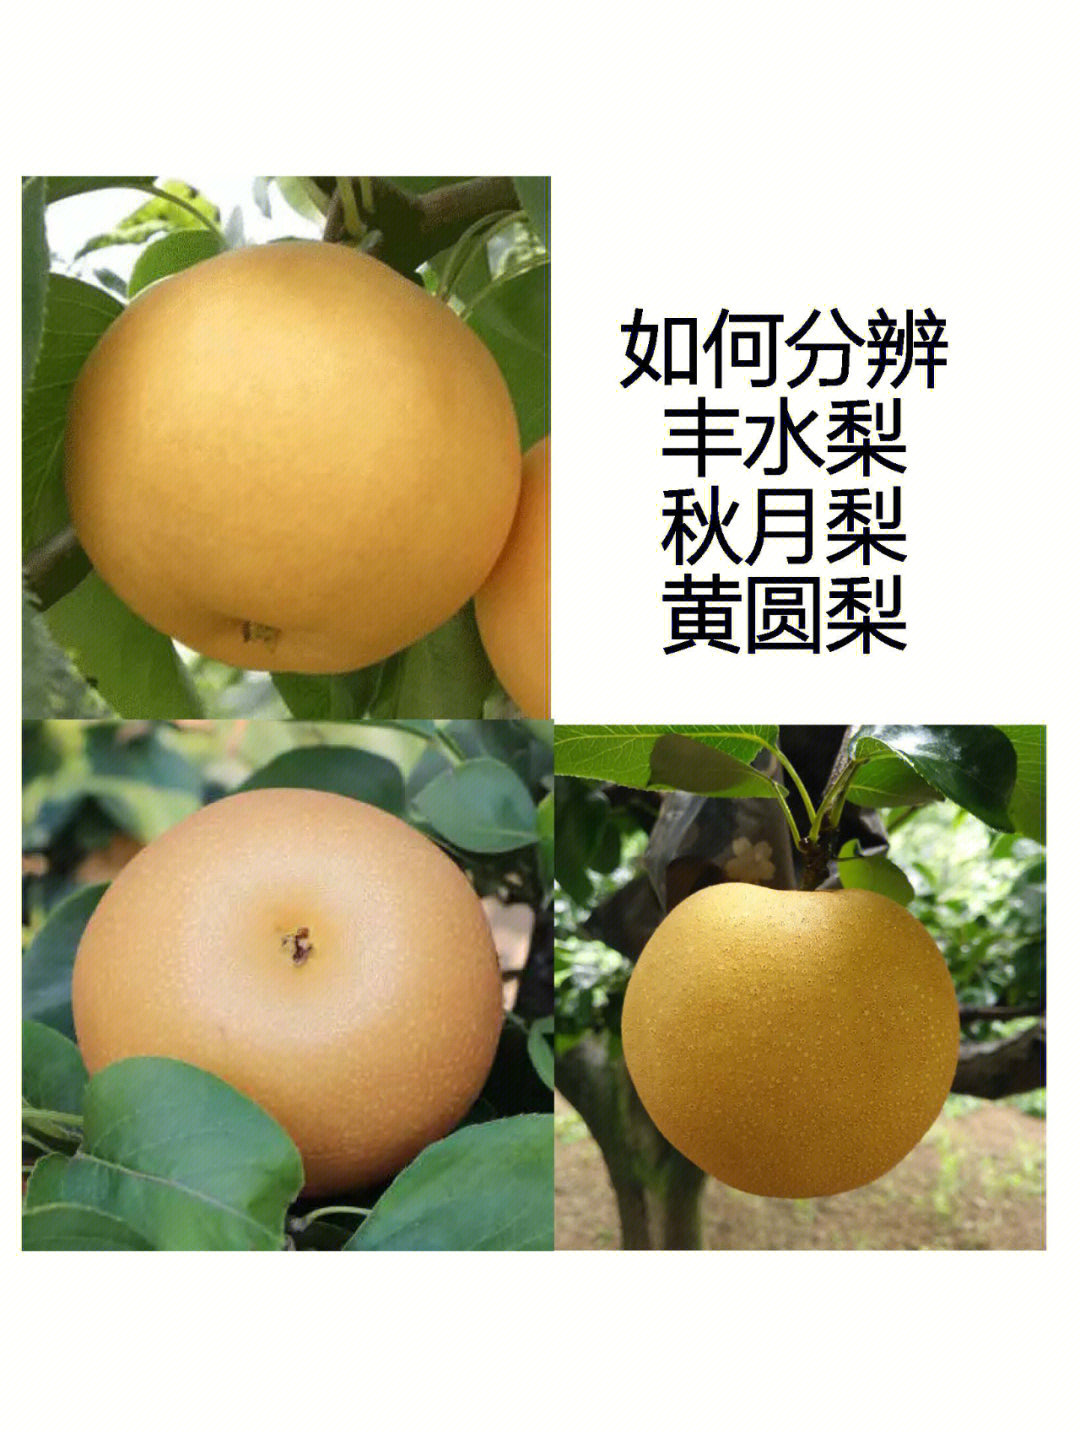 圆黄梨:是韩国园艺研究所用早生赤×晚三吉杂交育成的一个早熟梨品种